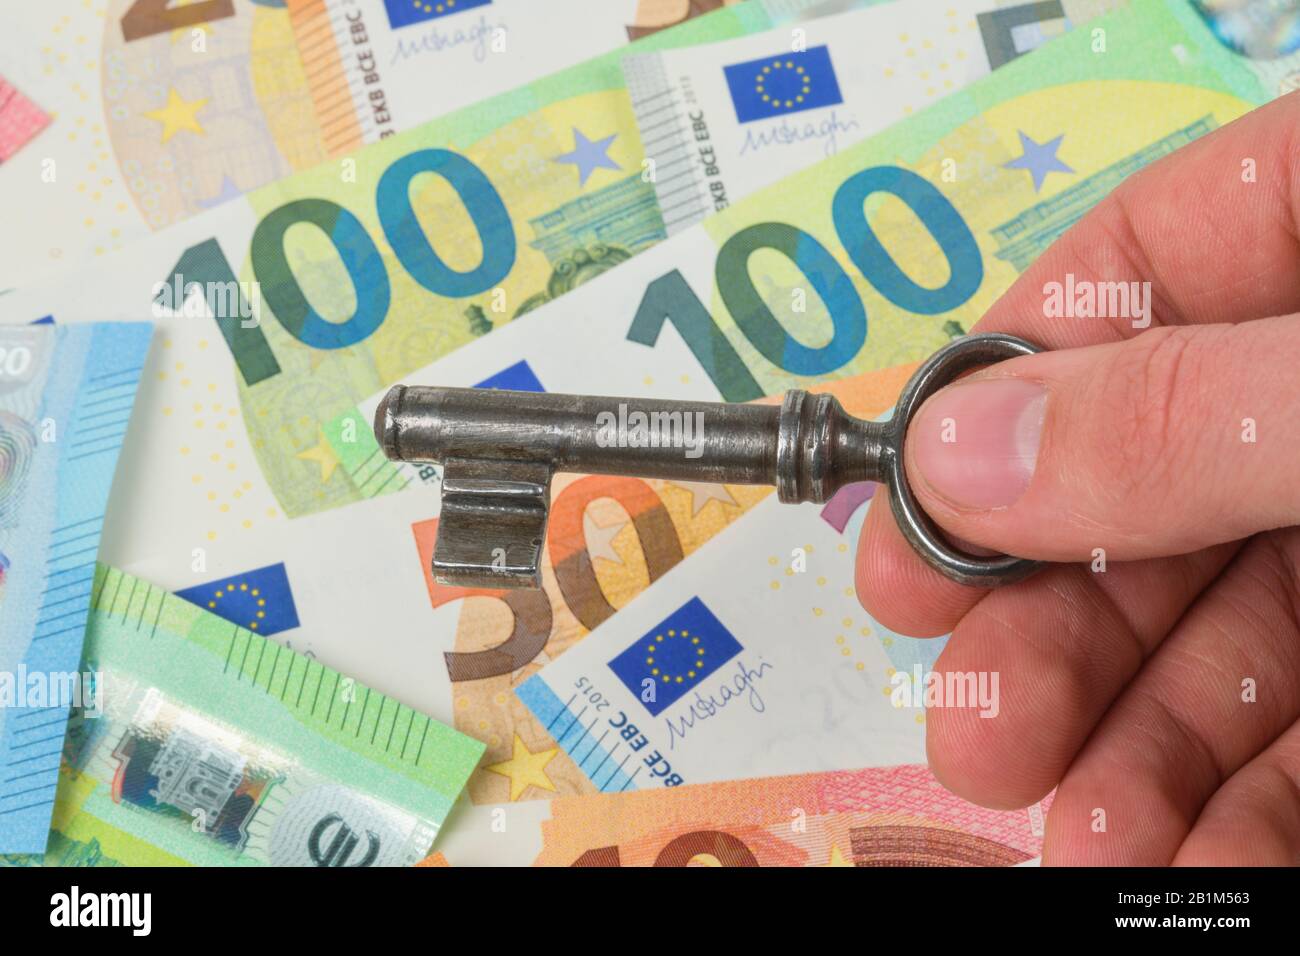 Geld, Euros, Banknoten, Scheine, Schlüssel, Symbolfoto Immobilienkauf, Studioaufnahme Stock Photo